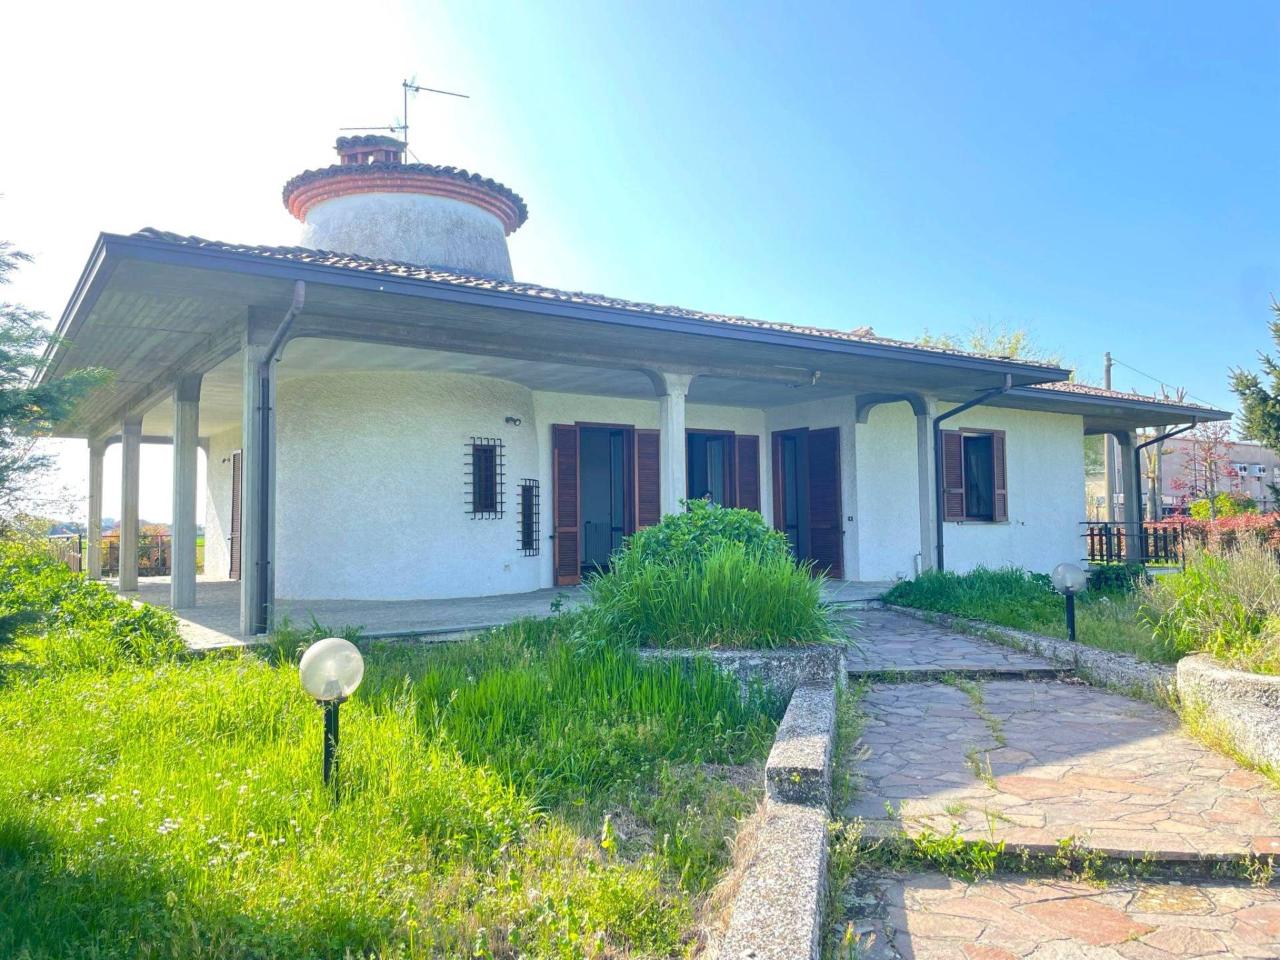 Villa in vendita a Chignolo Po